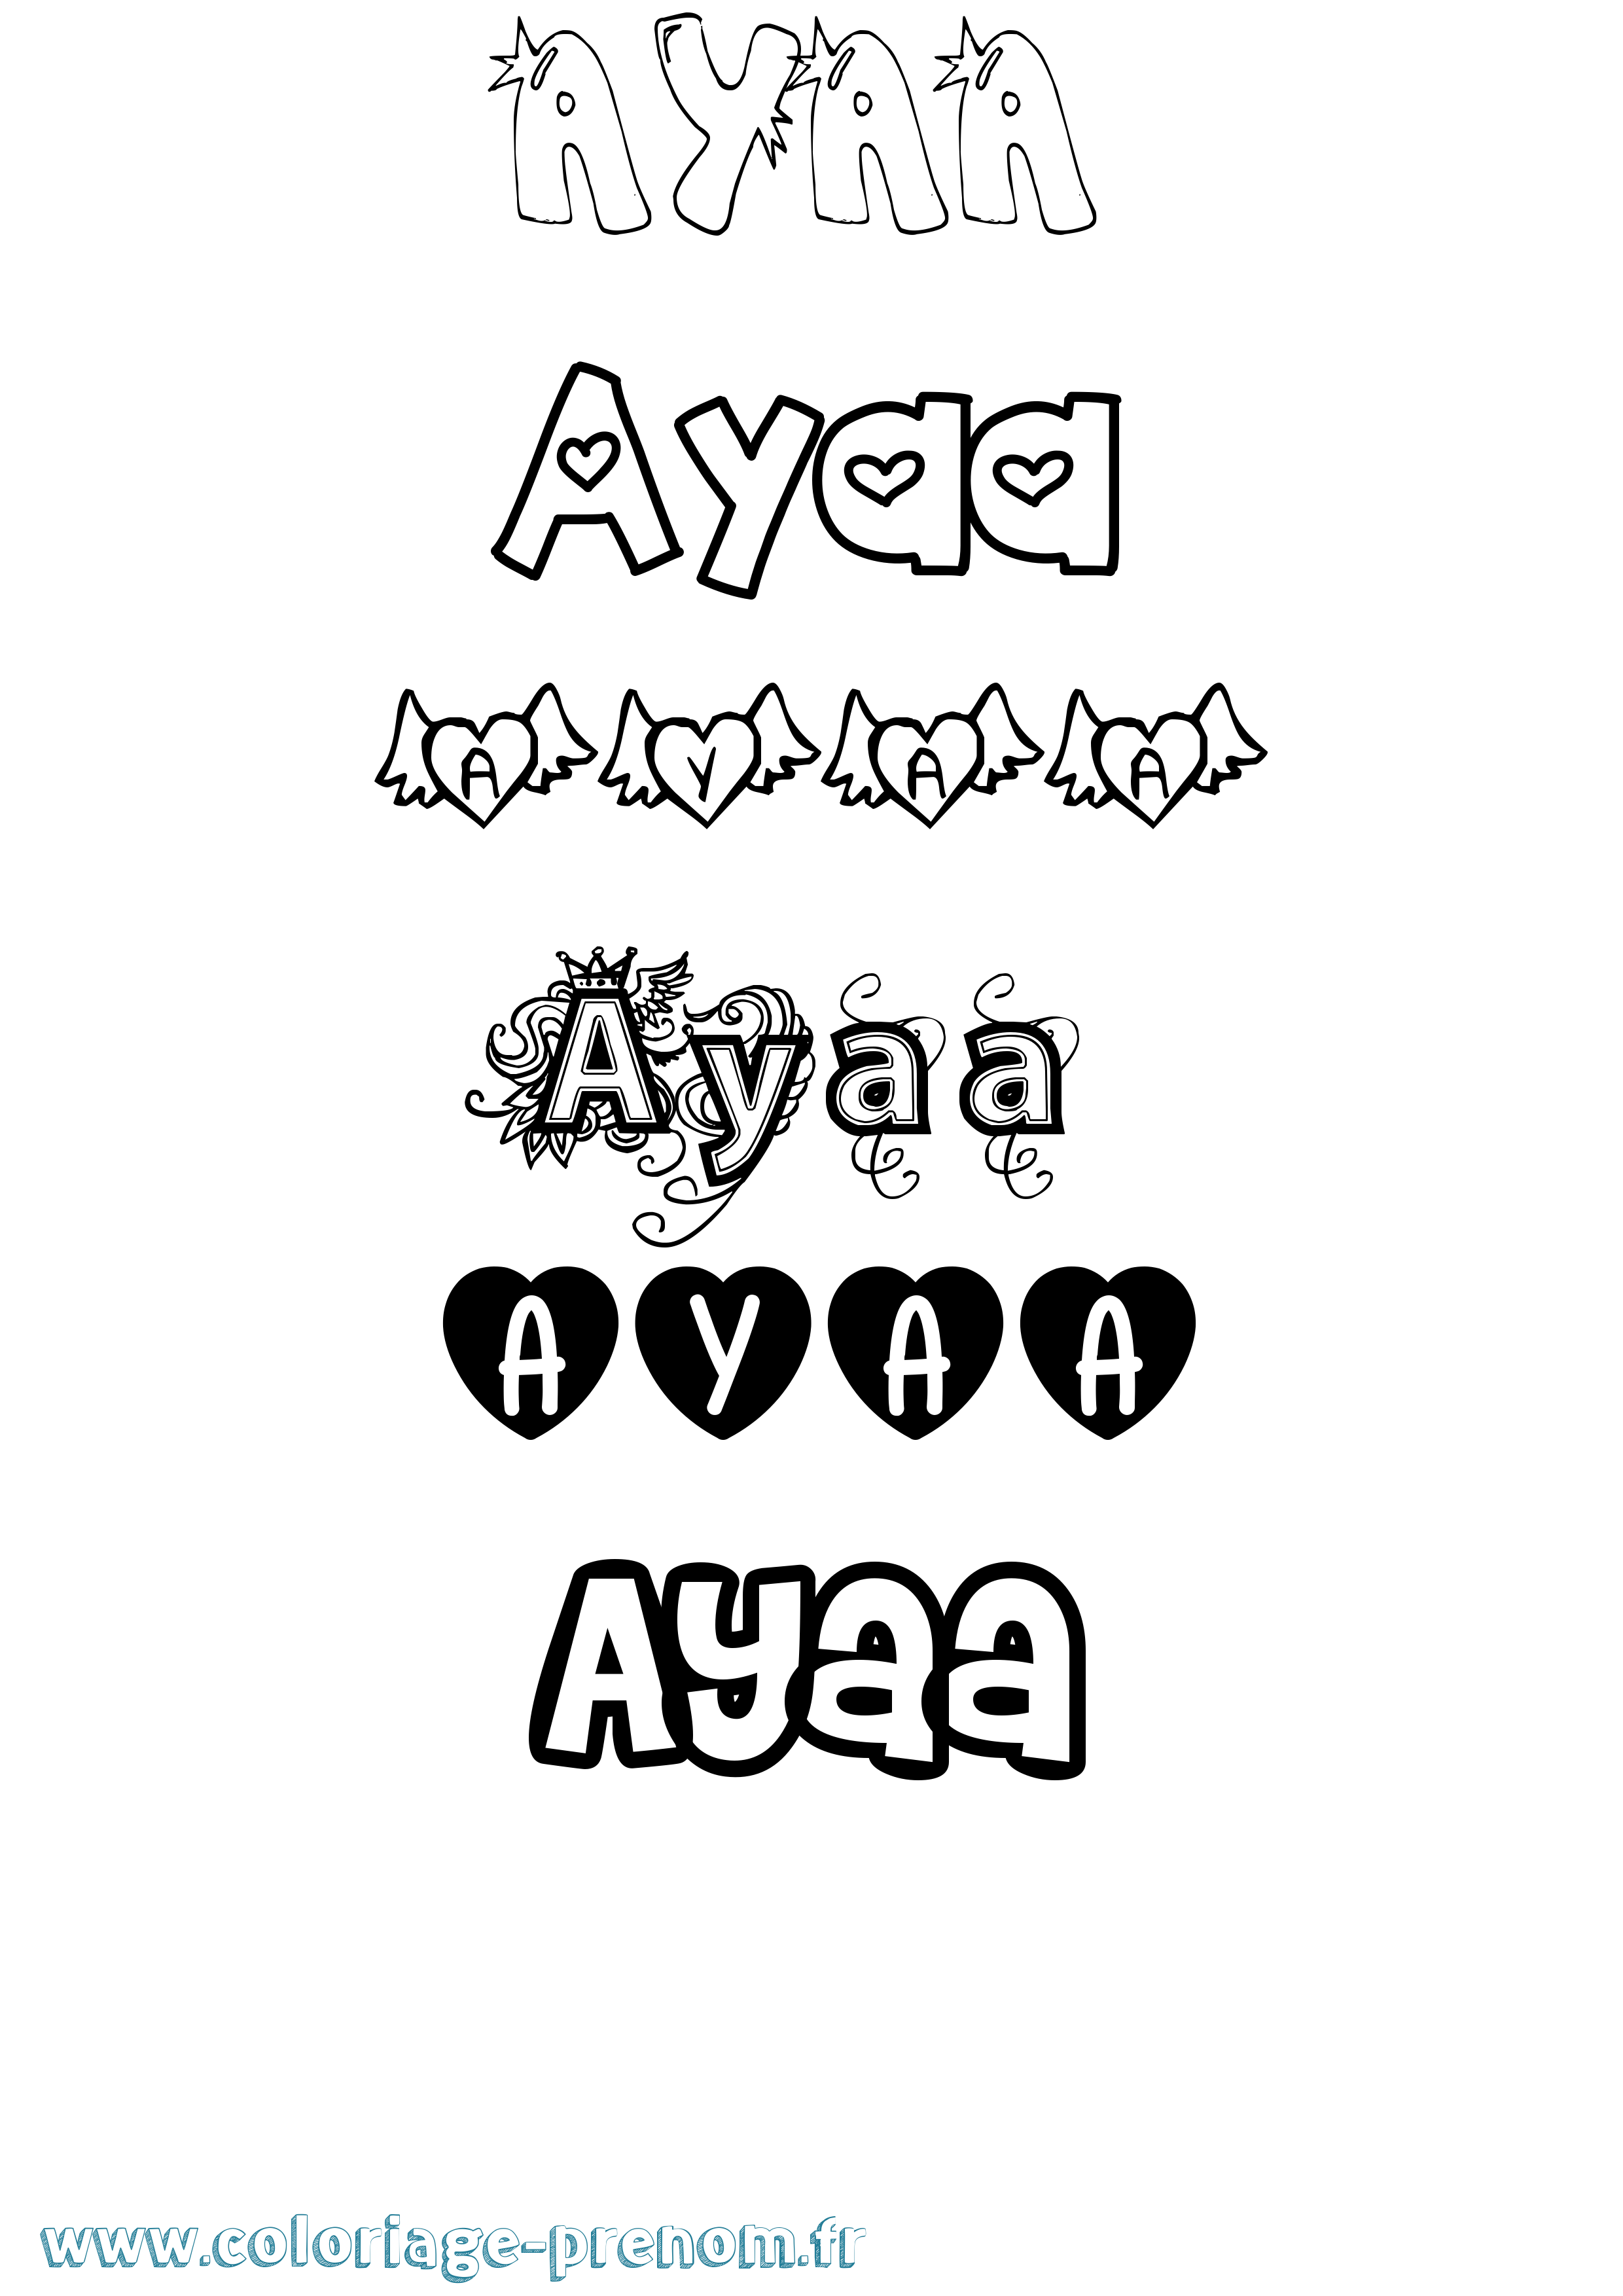 Coloriage prénom Ayaa Girly